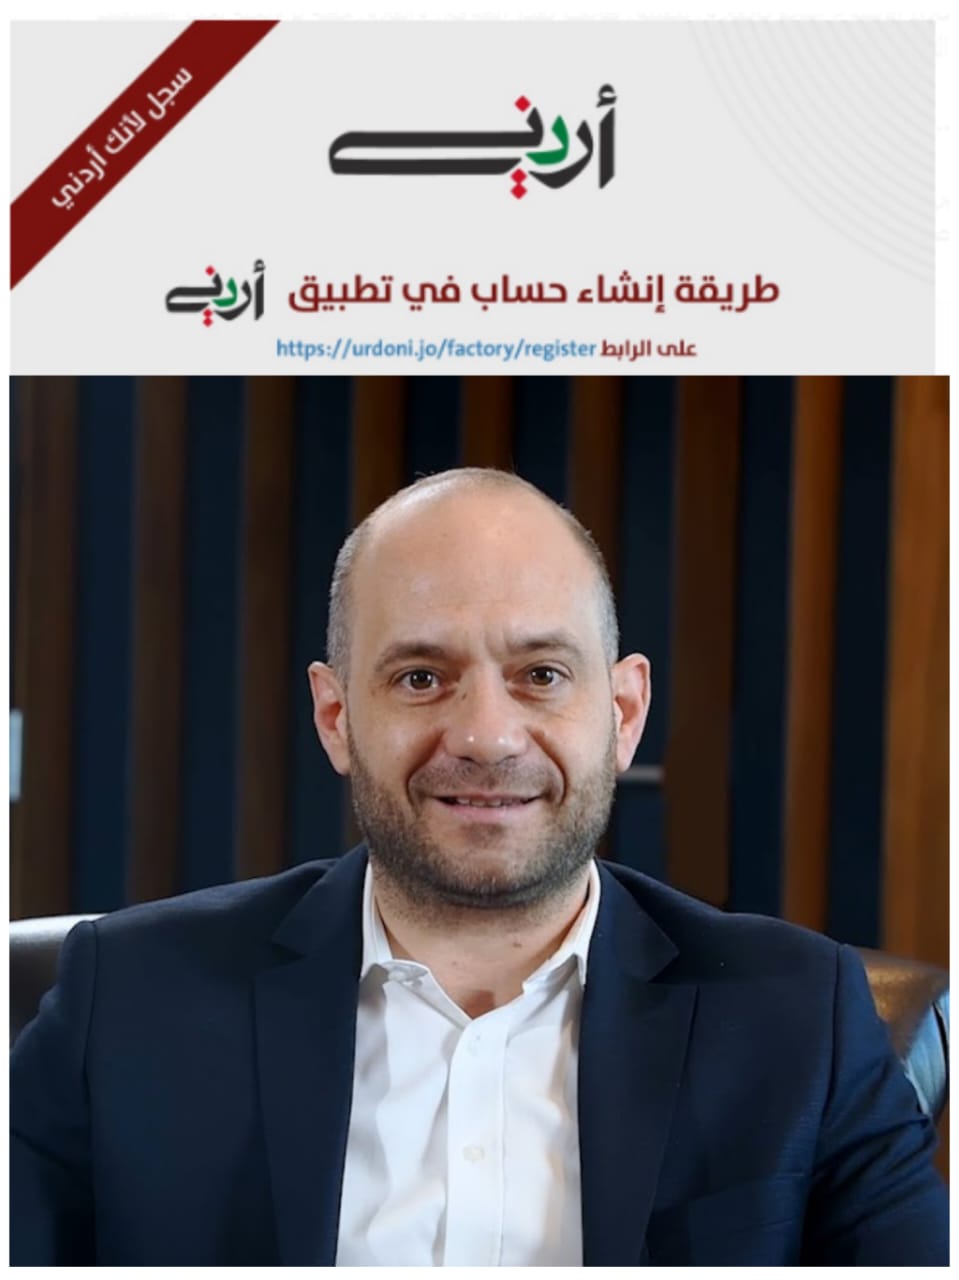 القصراوي يوضح قصة تطبيق أردني الداعم للصناعة الوطنية